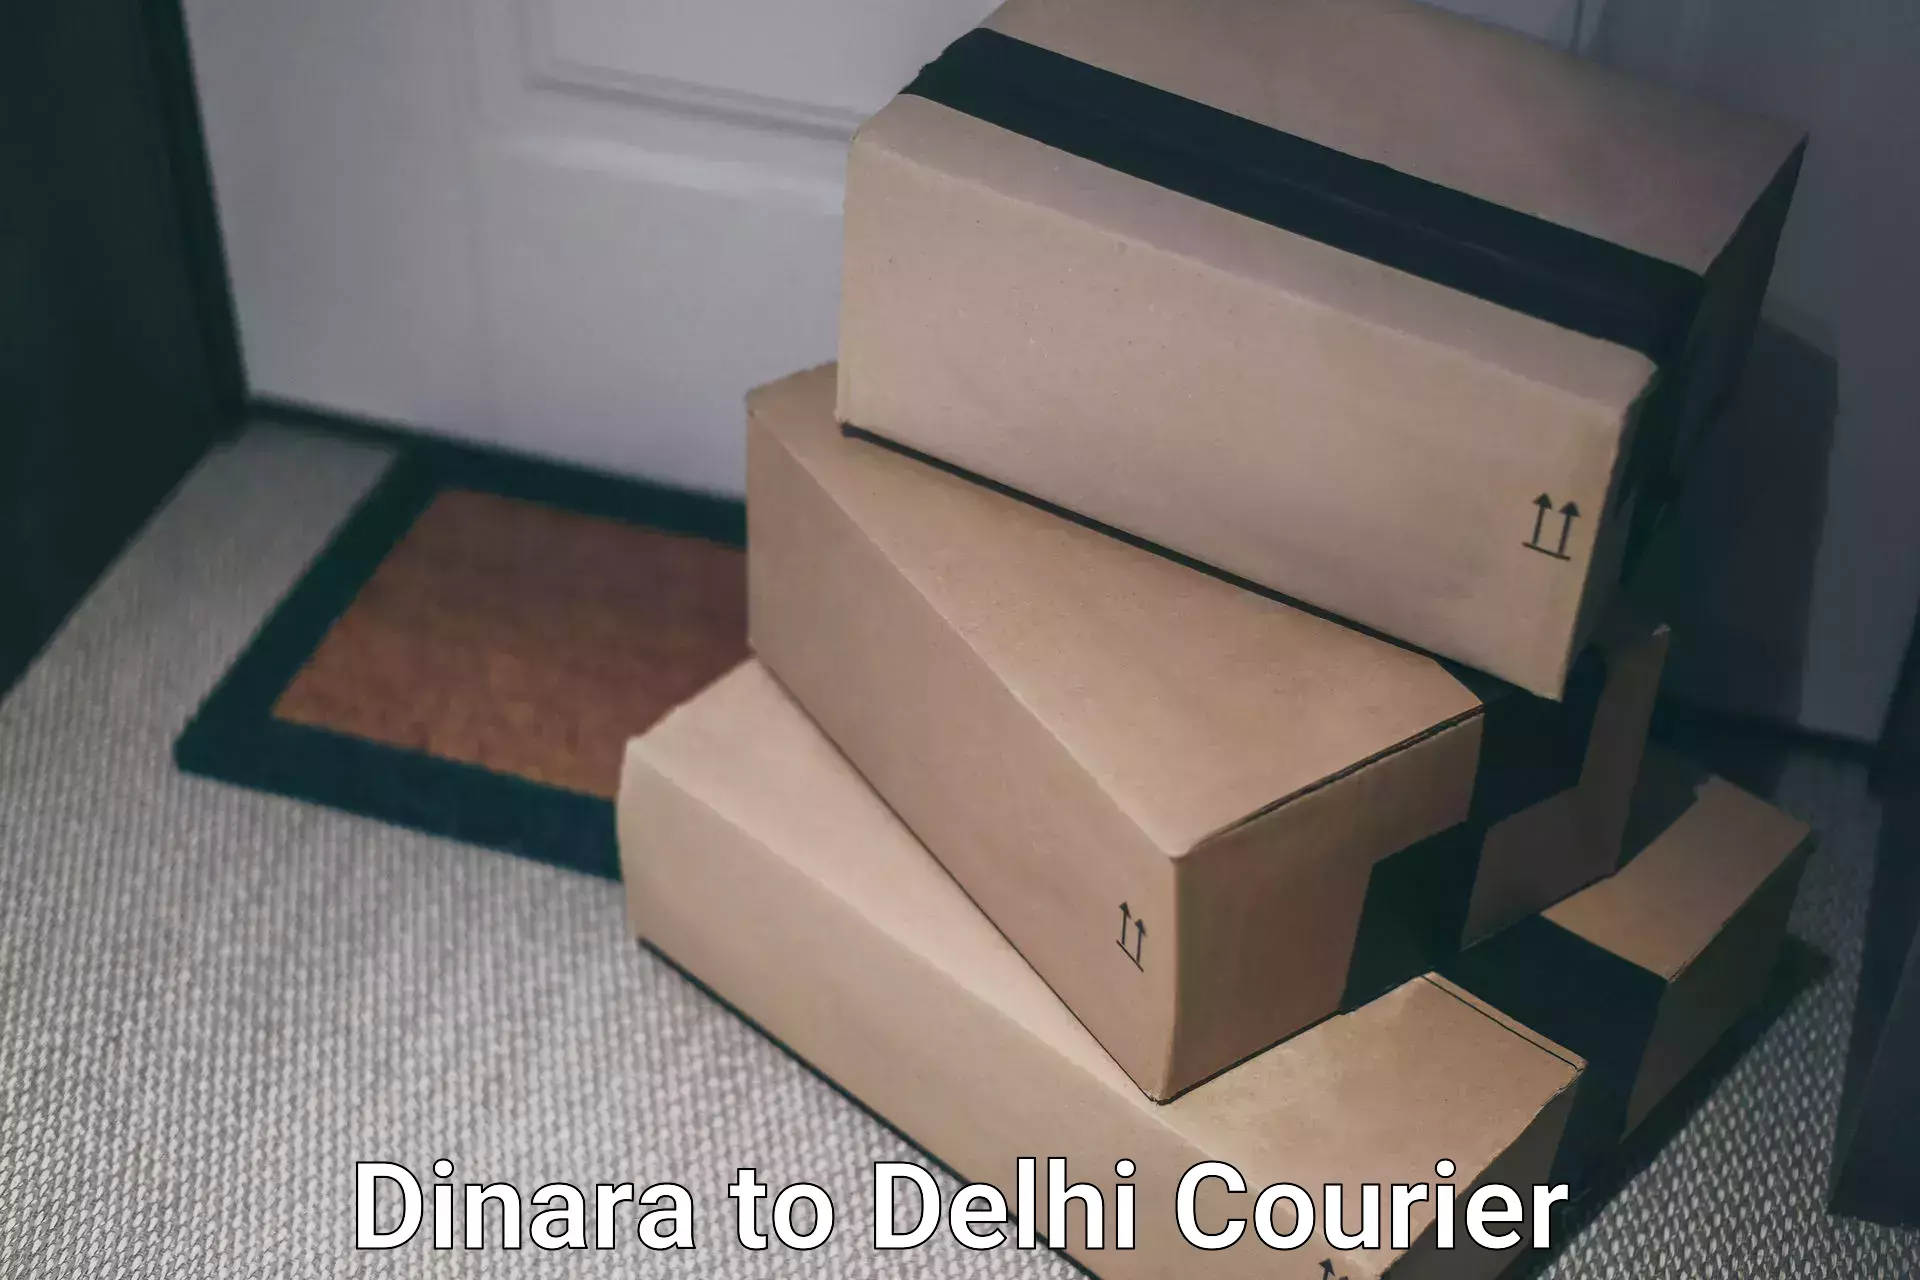 Ground shipping in Dinara to IIT Delhi